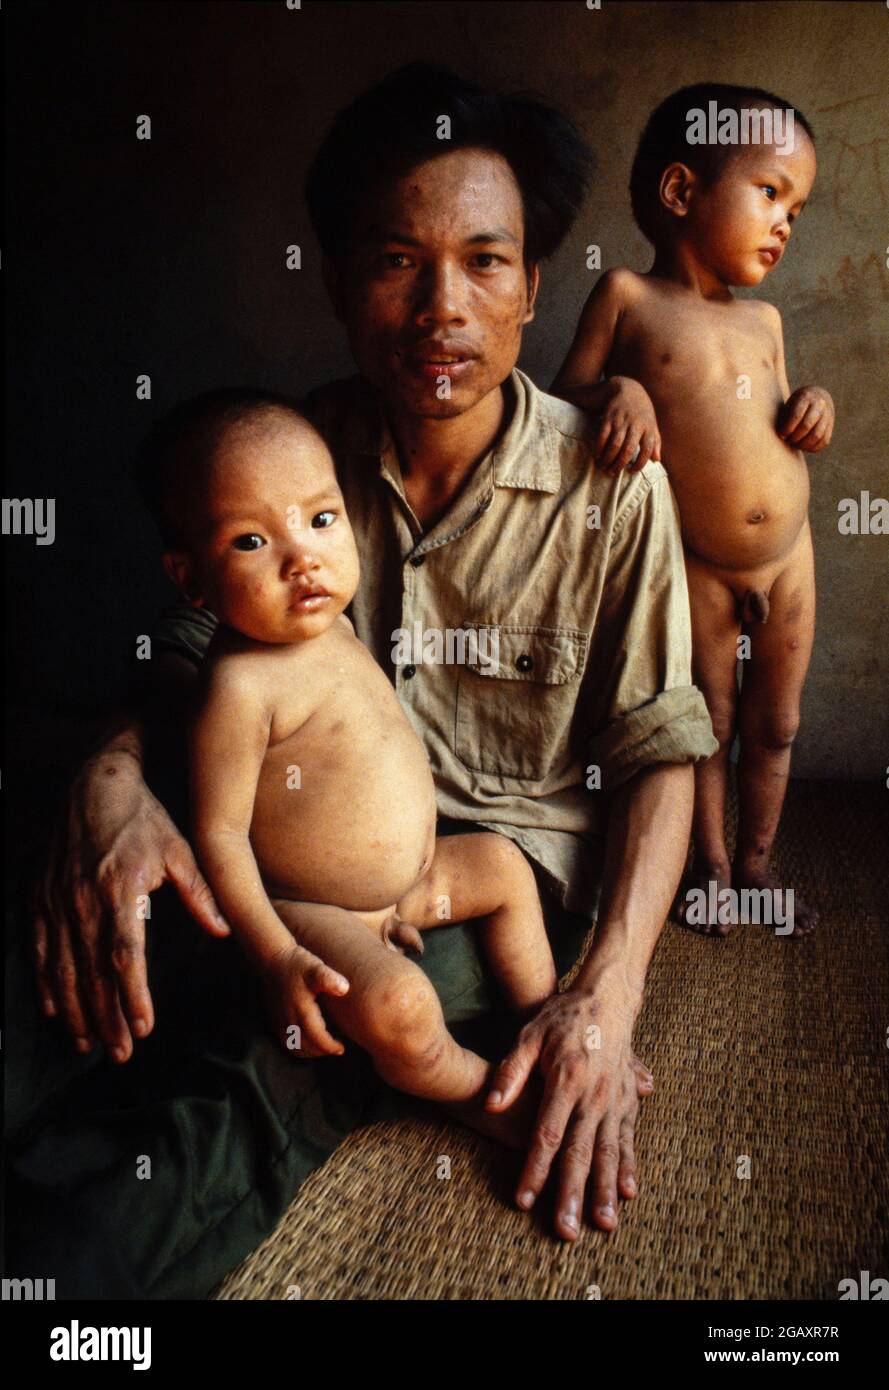 Questo padre, un soldato sulla pista ho Chi Minh, è stato spruzzato direttamente con l'agente Orange. I suoi due figli hanno entrambi difetti cardiaci, giugno 1980. Foto Stock